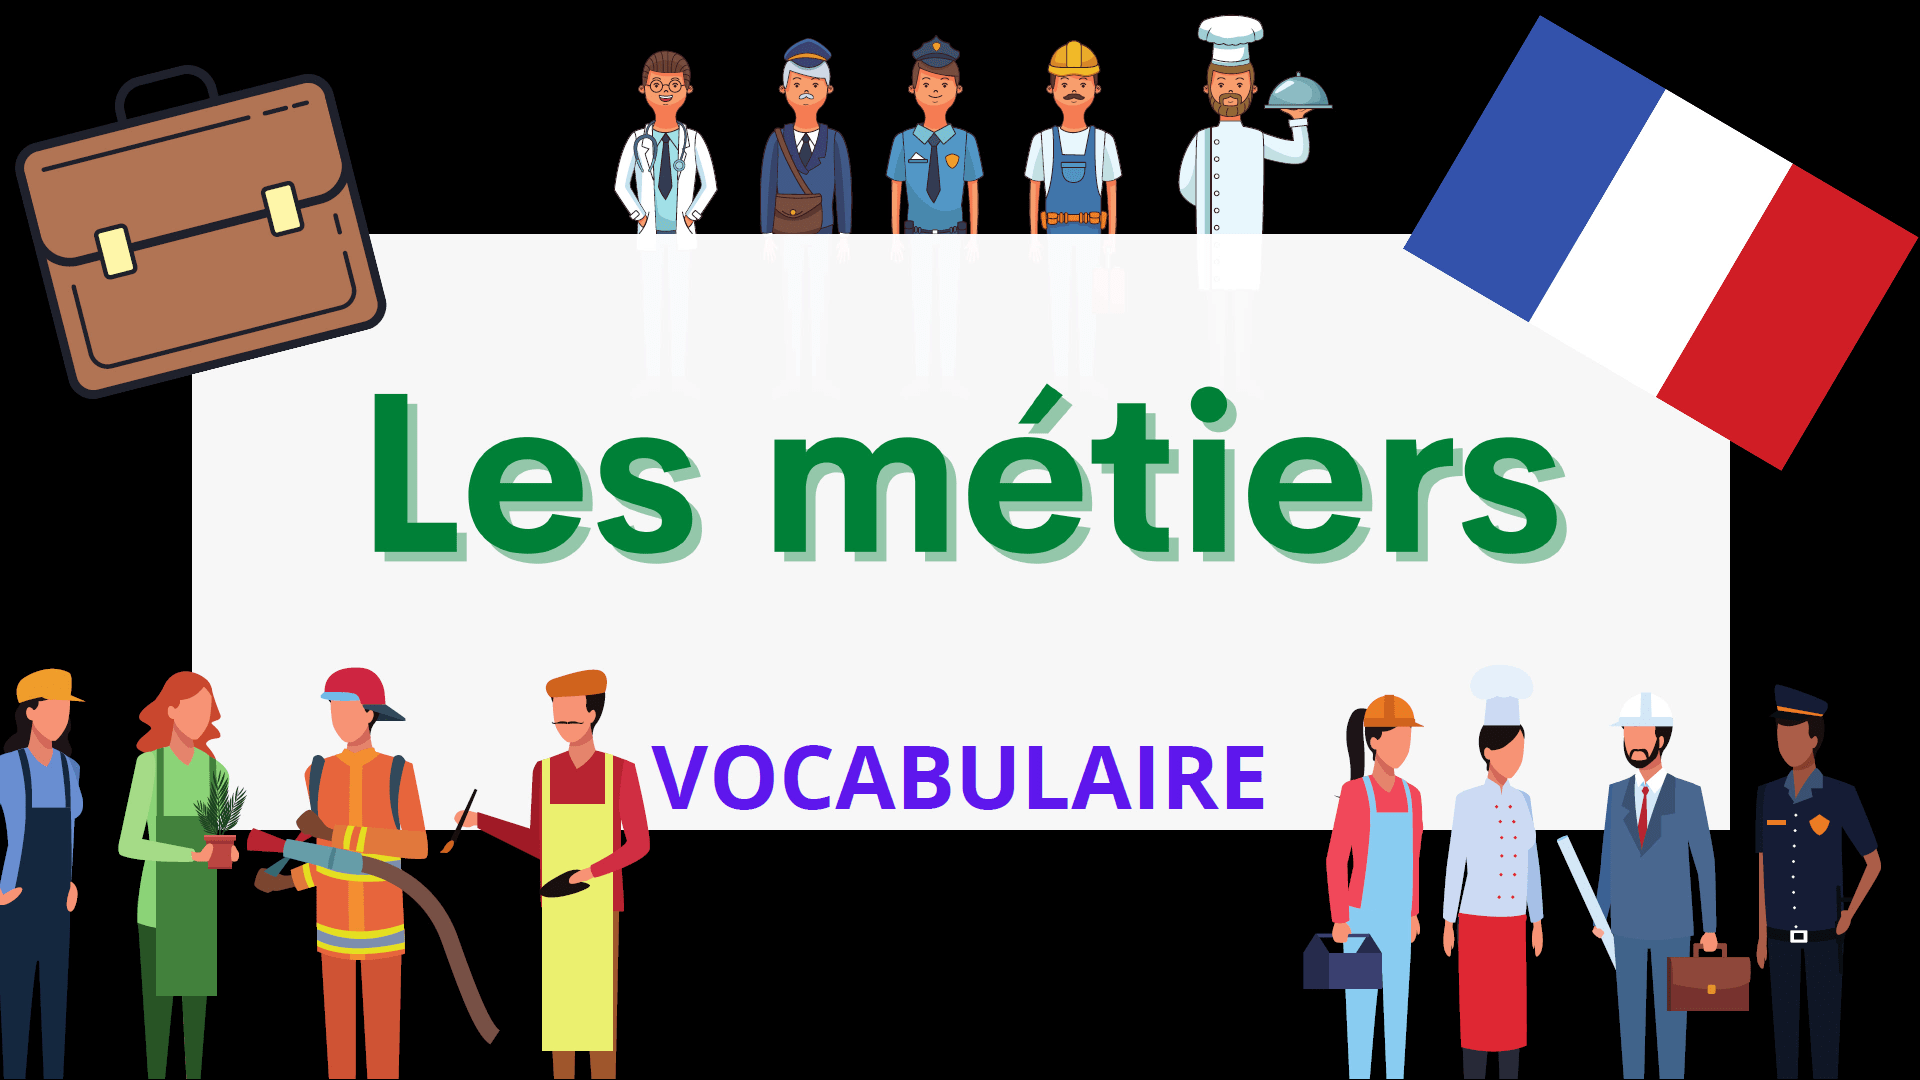 Les métiers en français - Jobs in French